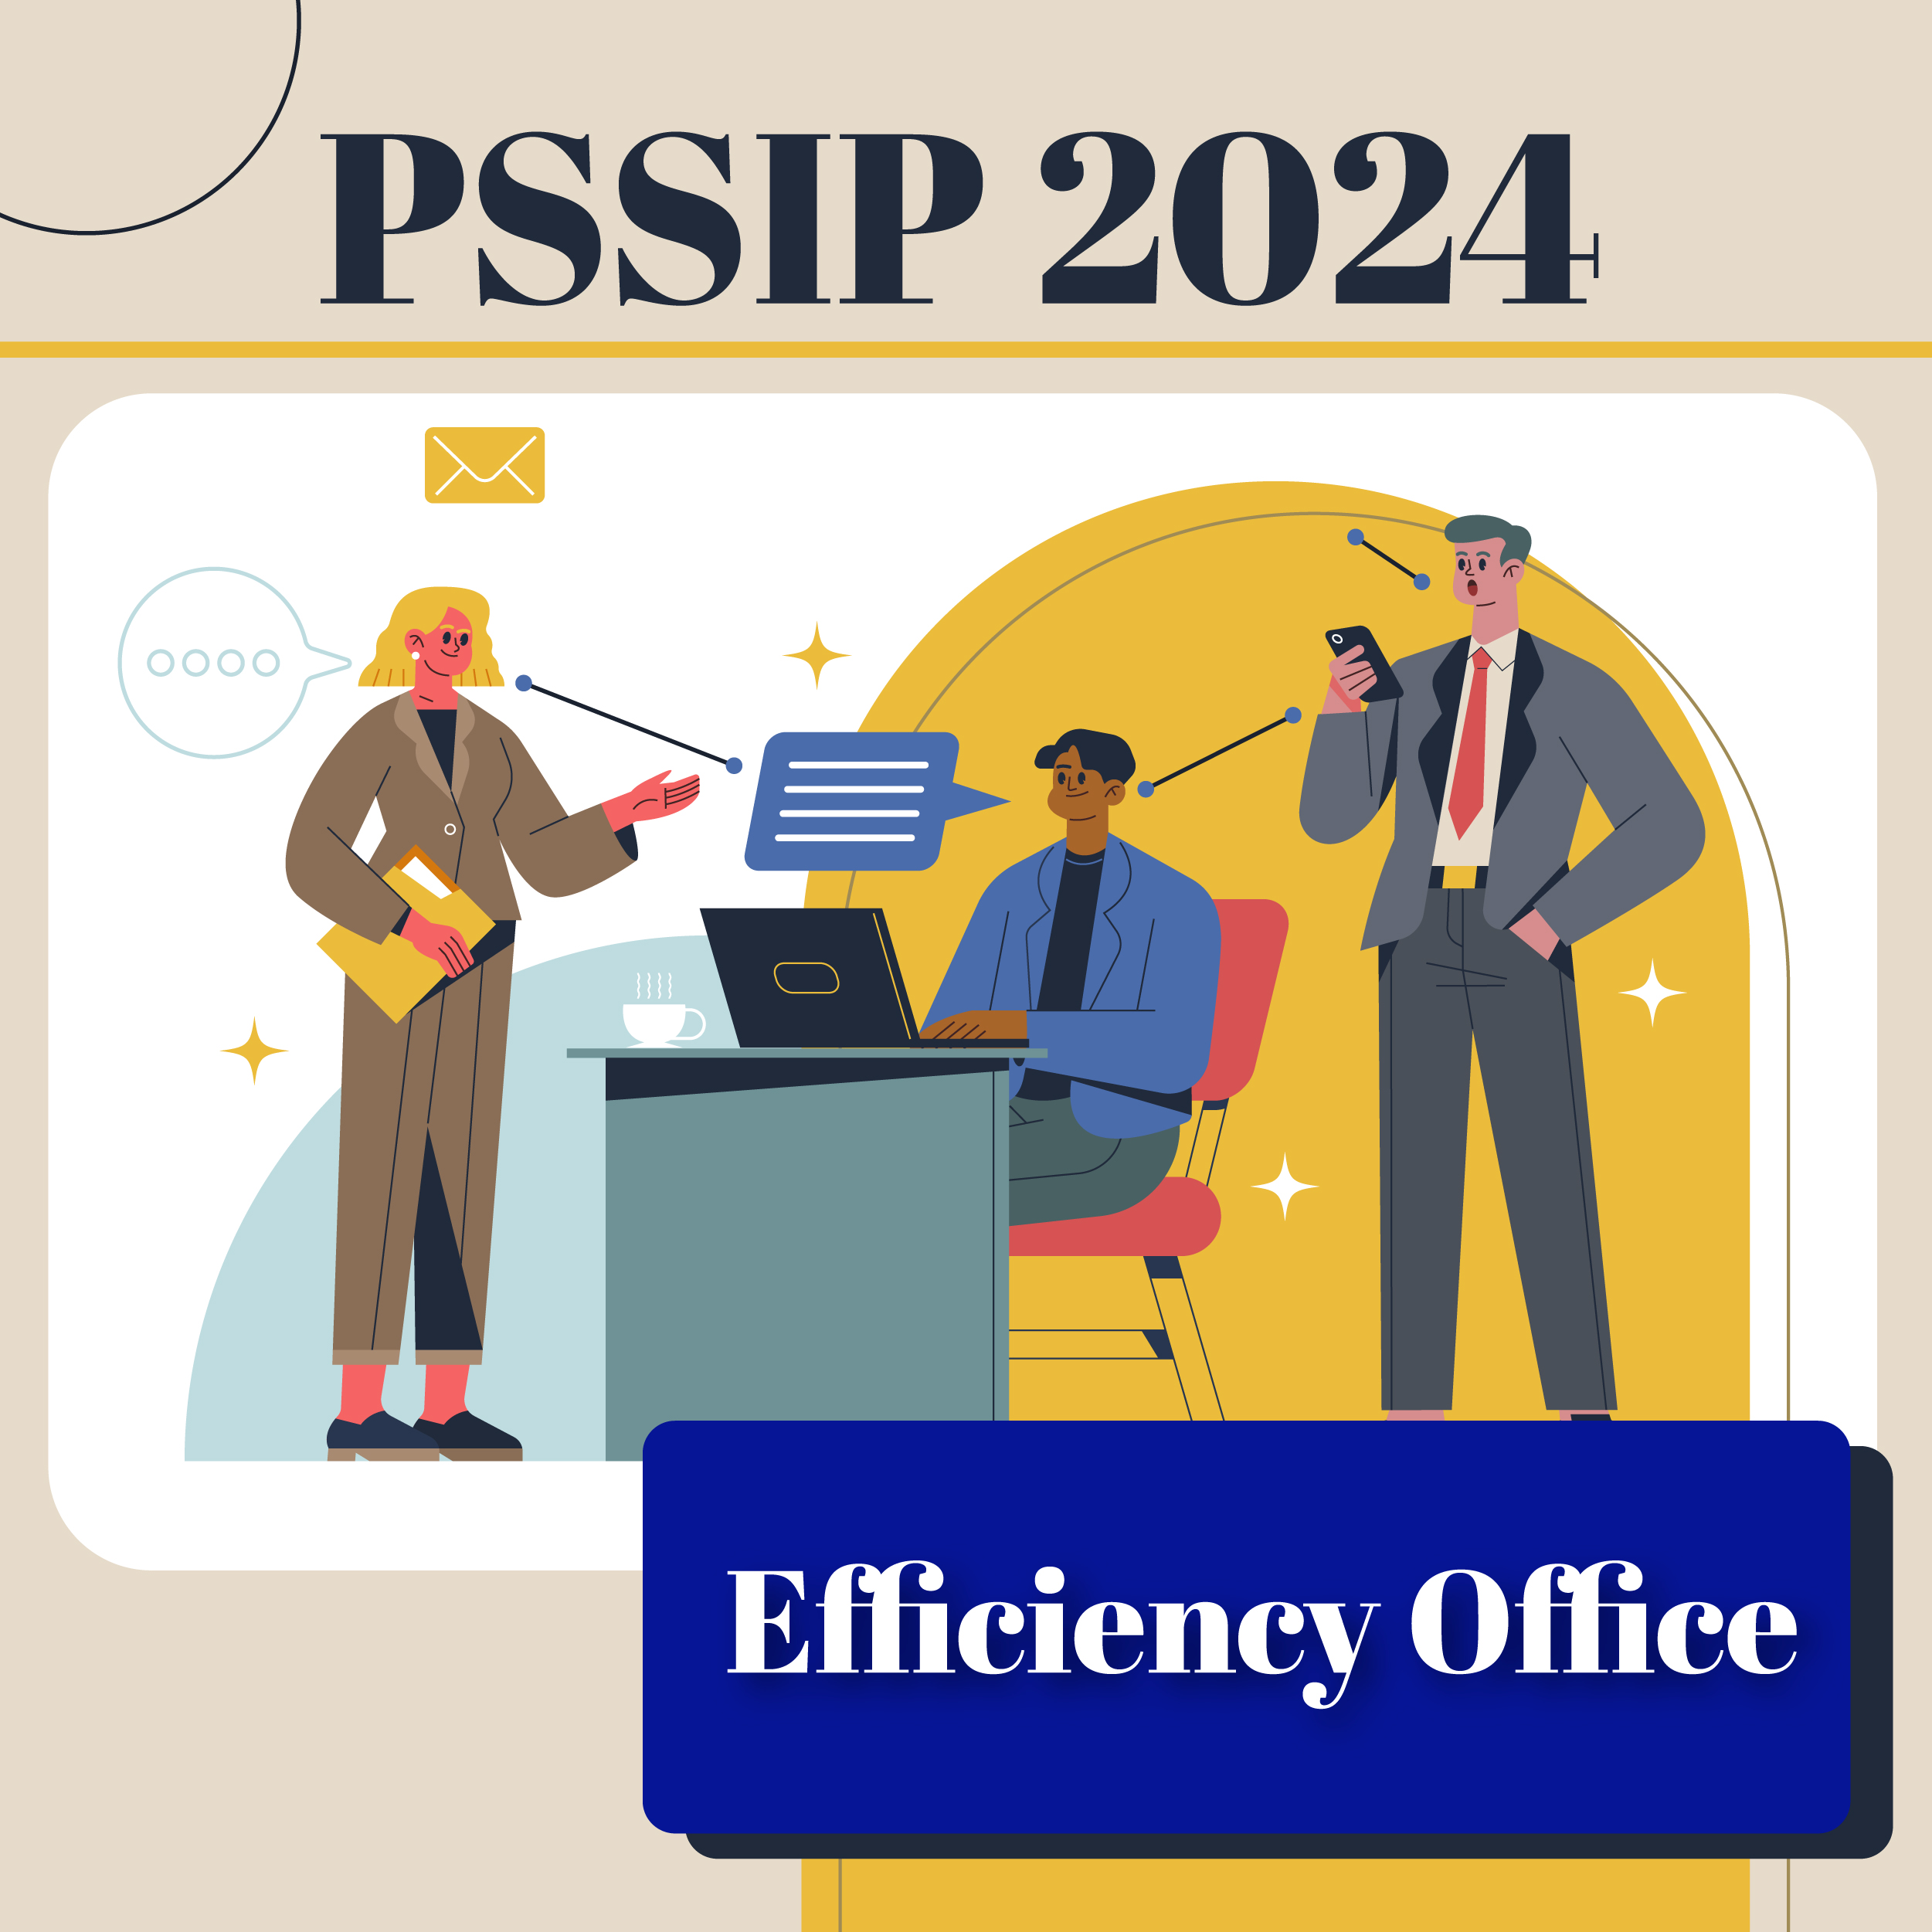 PSSIP2024 – Efficiency Office – 1823